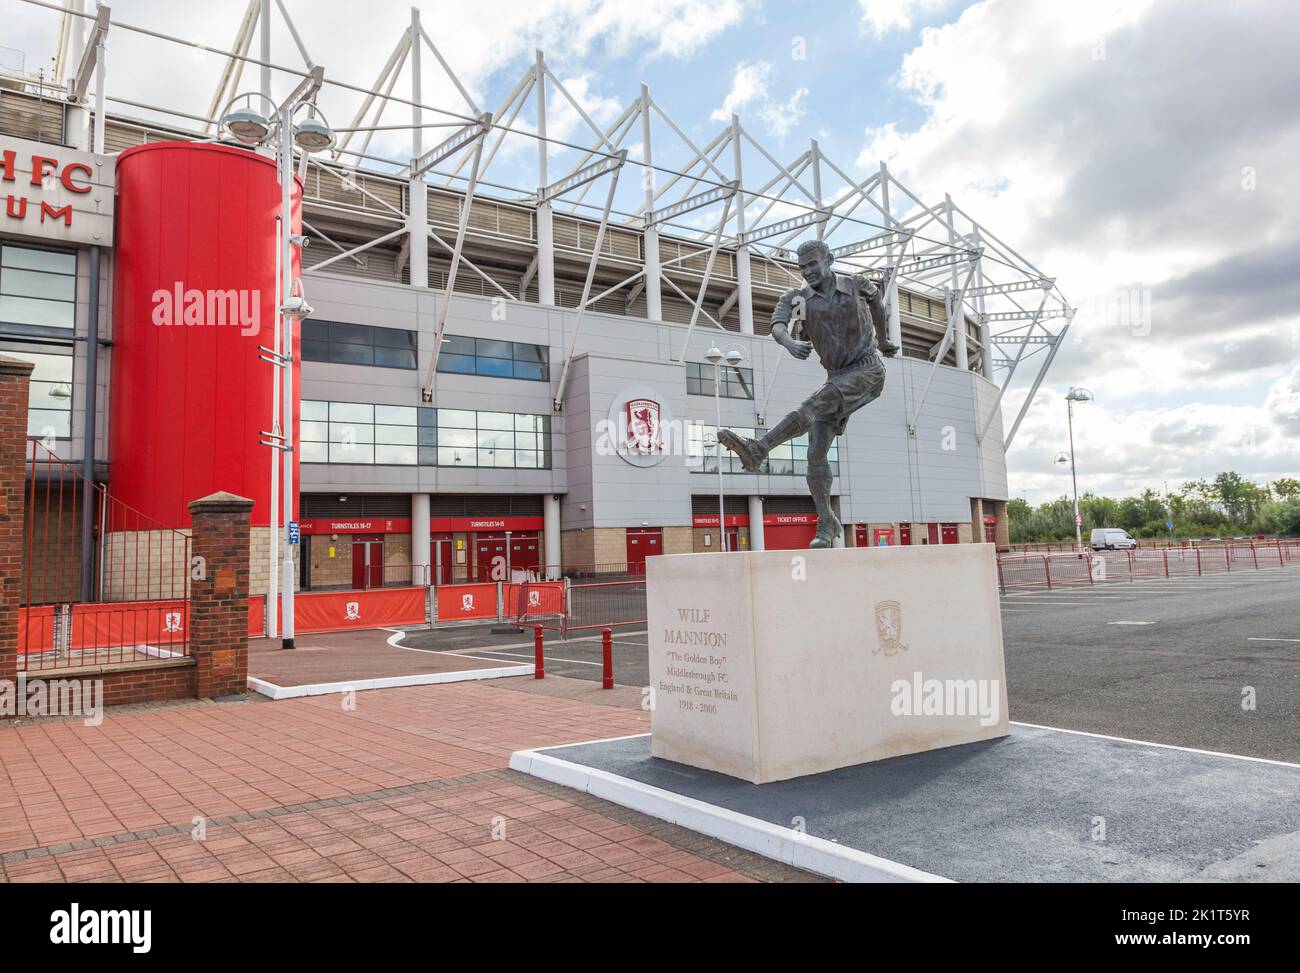 El estadio Riverside, sede del Middlesbrough Football Club, Inglaterra, Reino Unido. Estatua del ex jugador Wilf Mannion Foto de stock